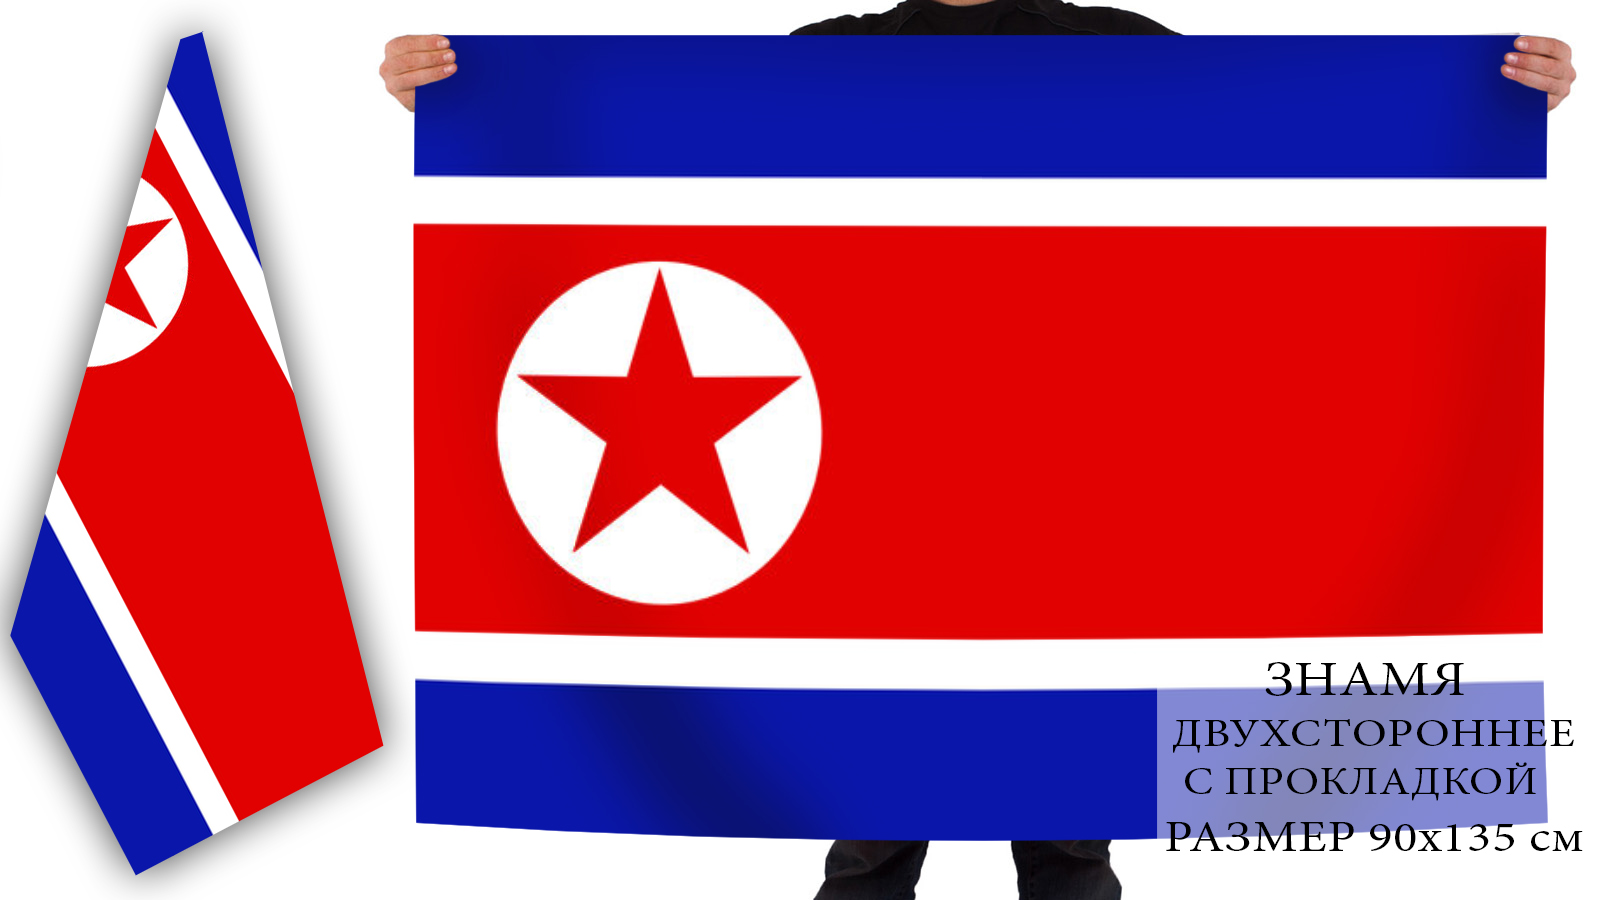 Заказать онлайн флаг Северной Кореи недорого